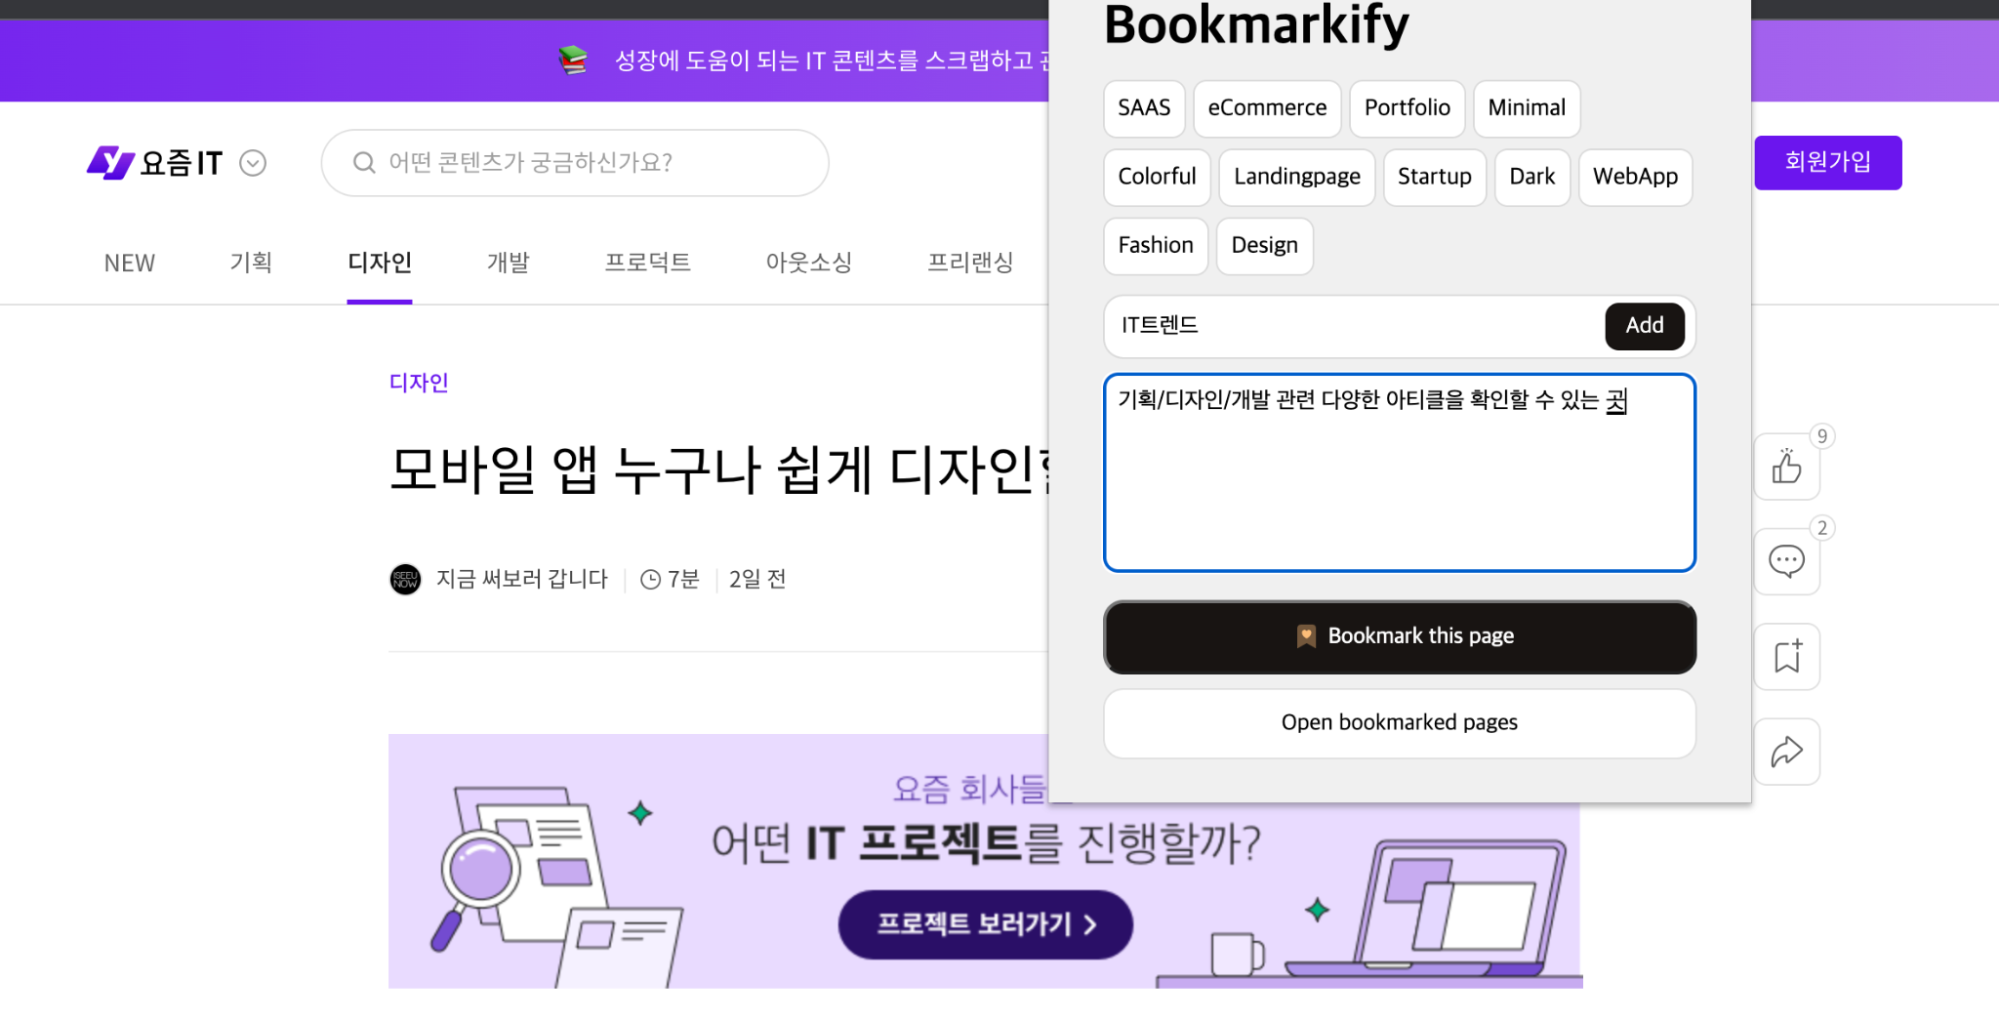 북마크 관리 서비스 Bookmarkify